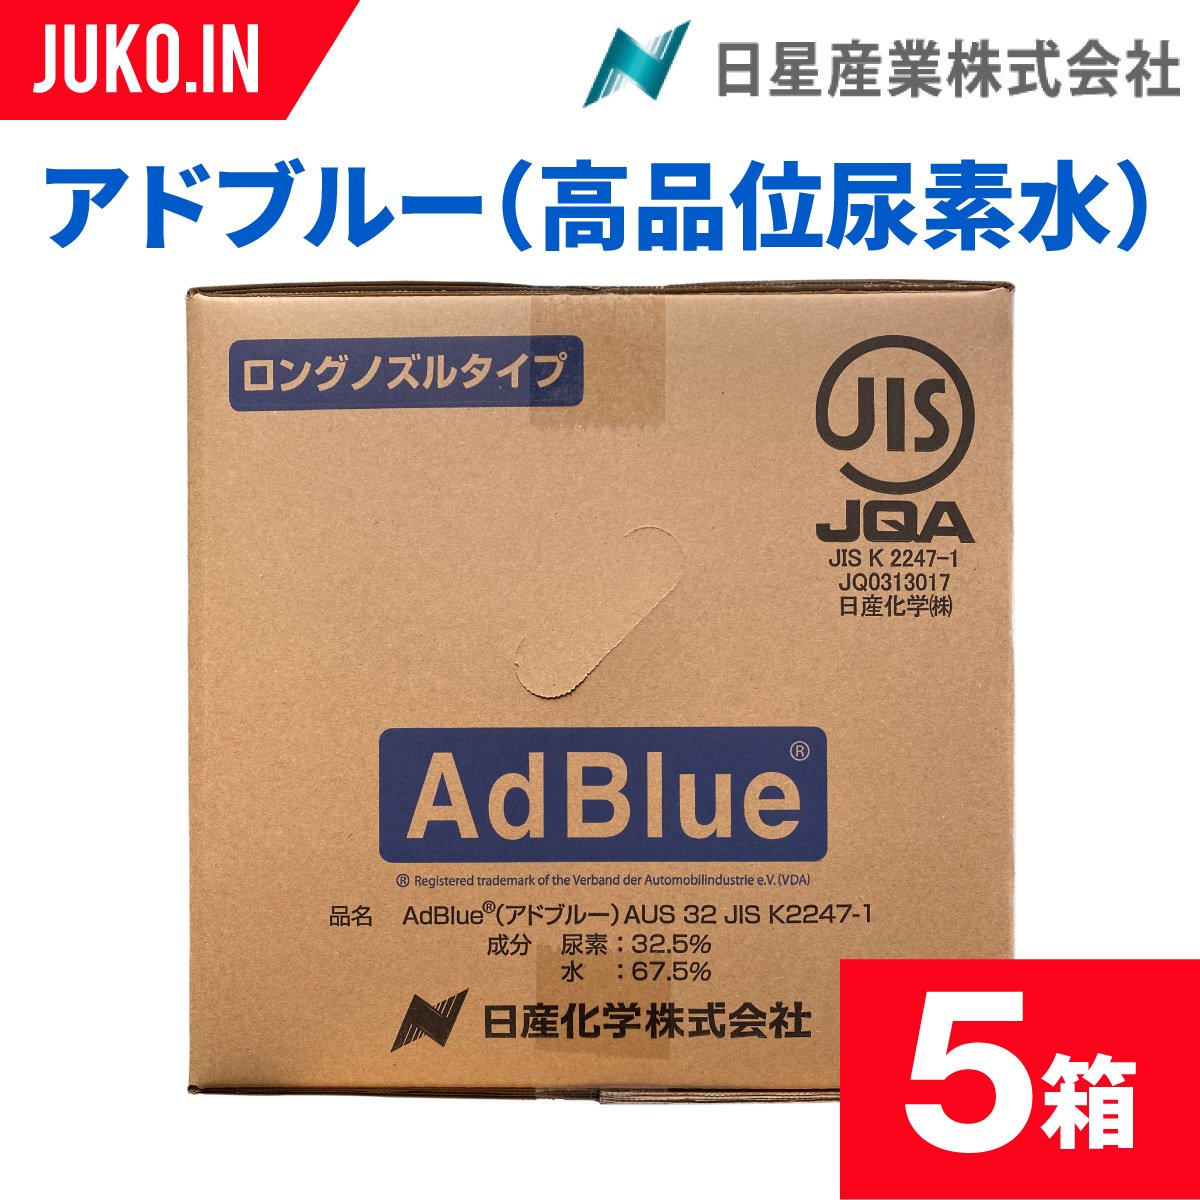 【新品未開封】AdBIue アドブルー 尿素水溶液  20L